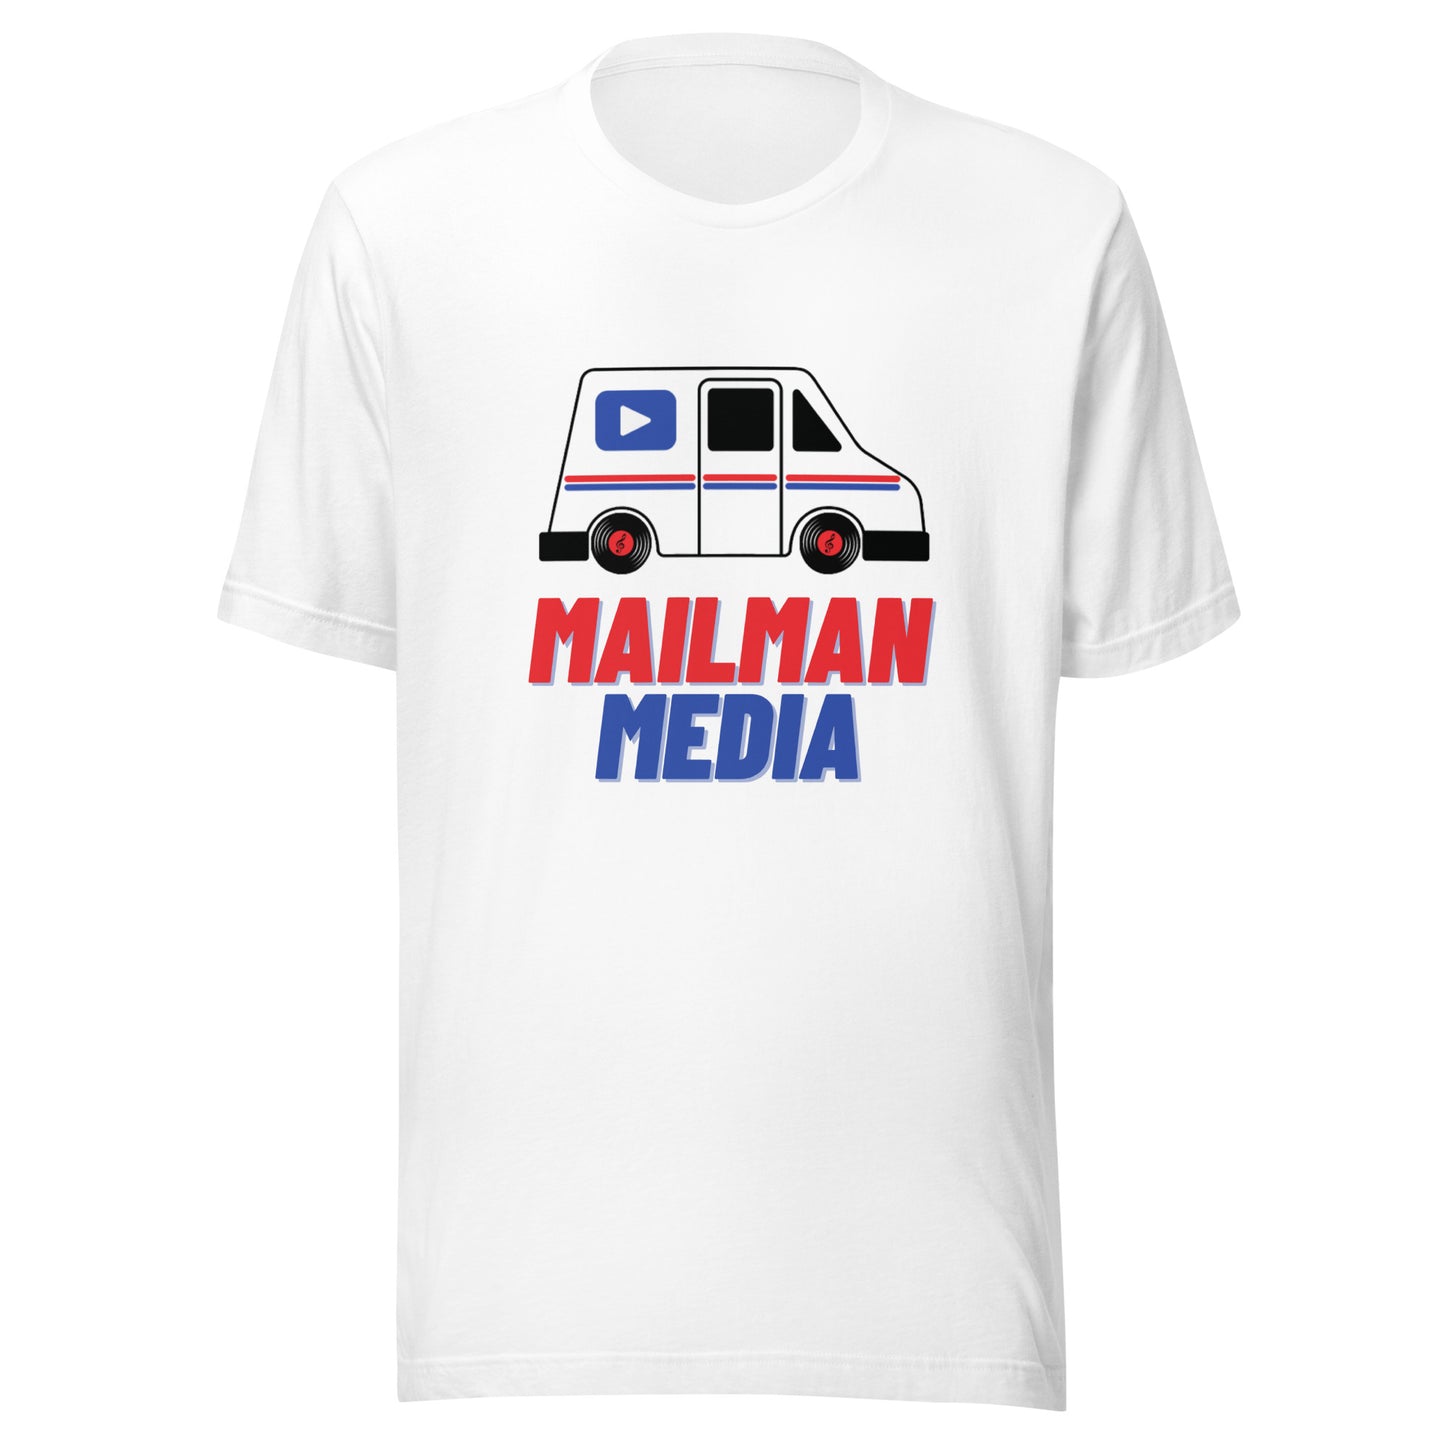 Mailman Media t-shirt